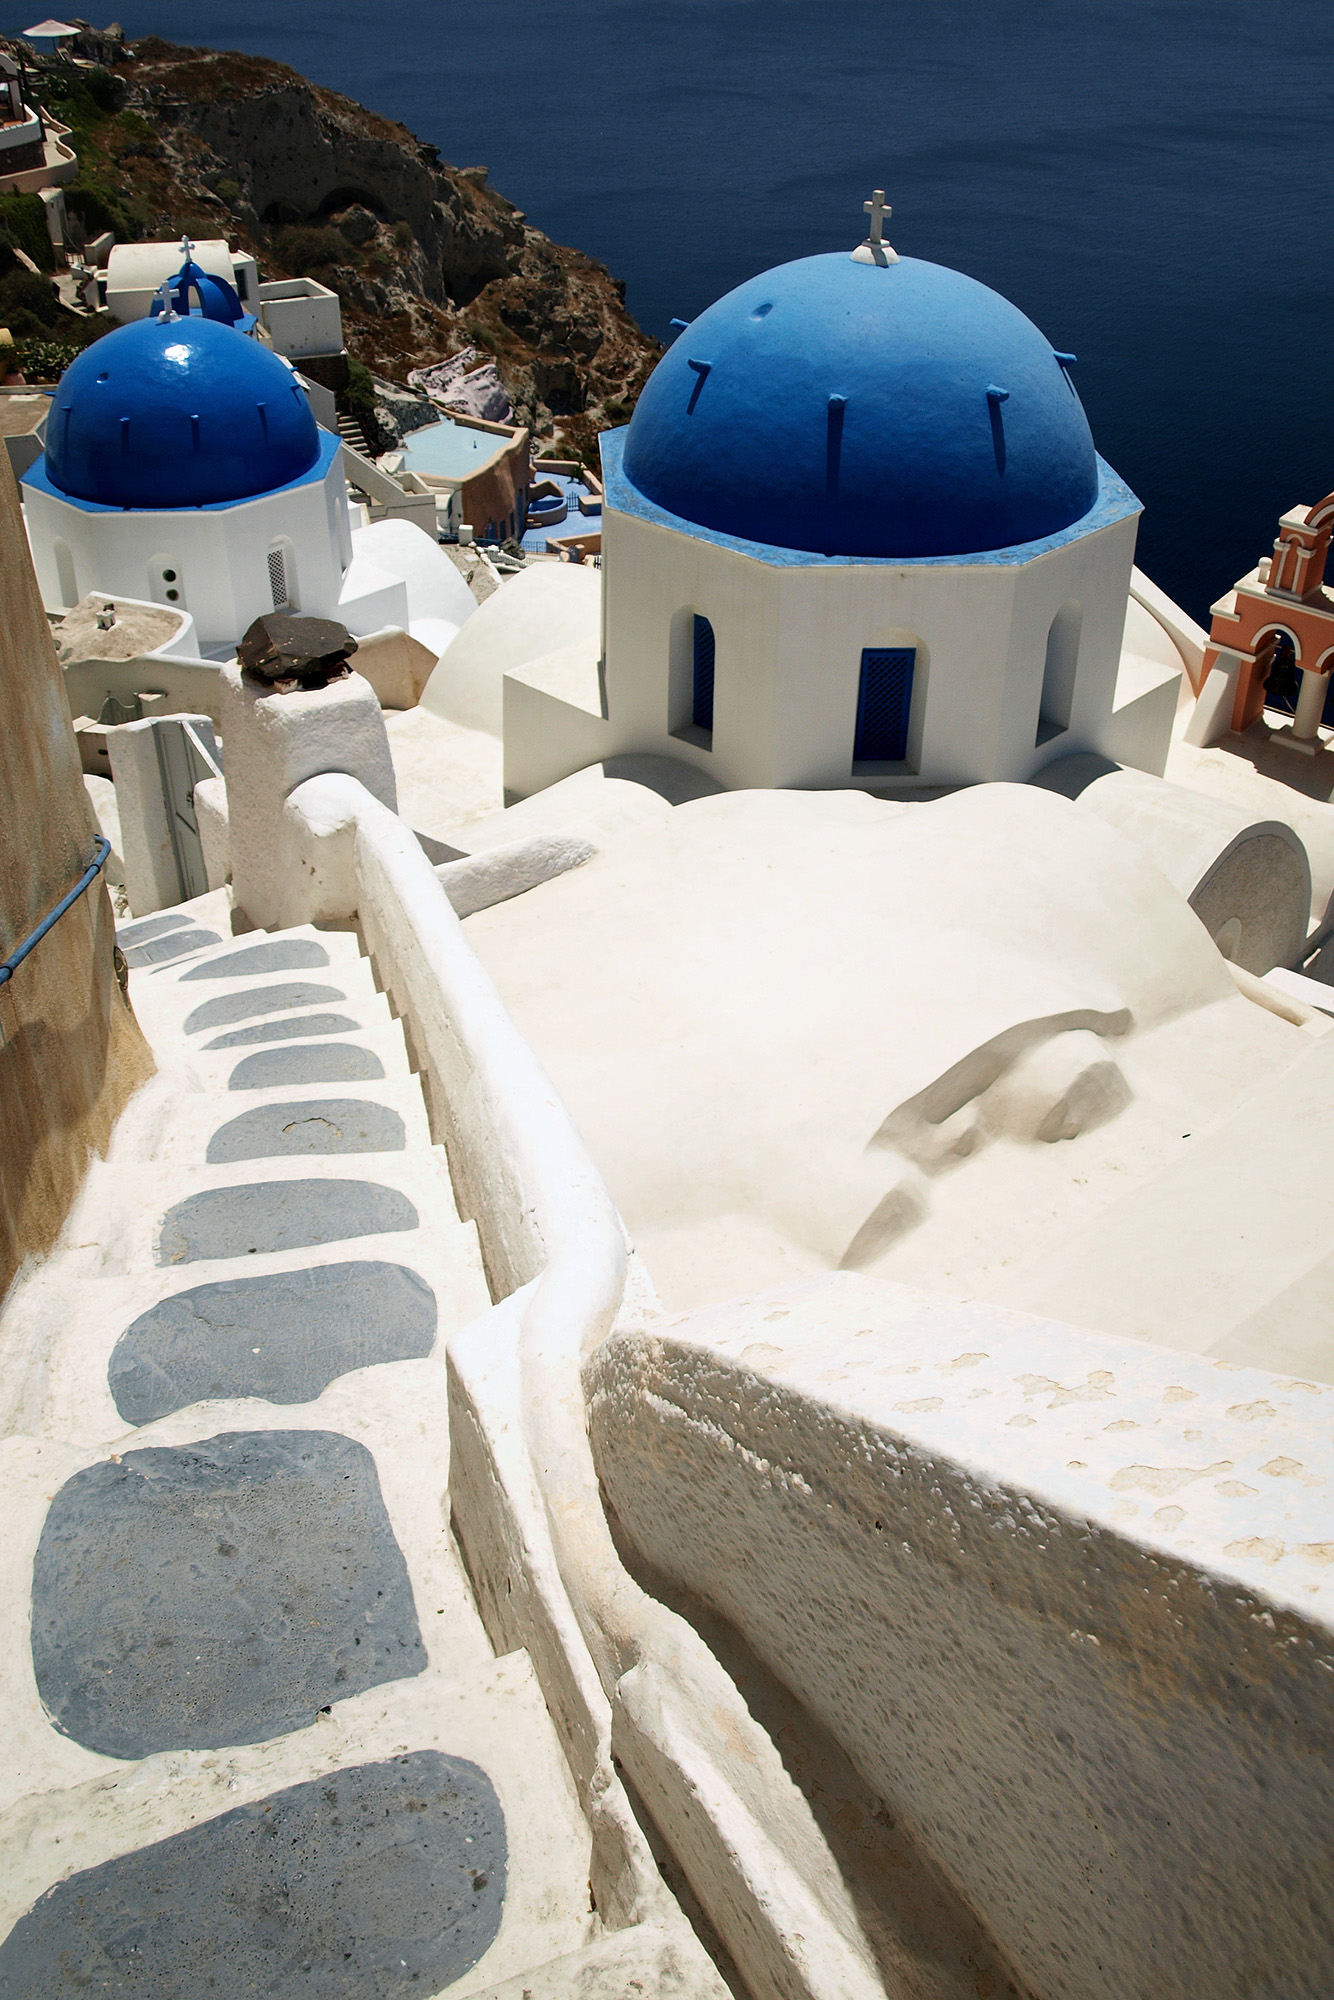 typowy widok z Santorini, niebiesko biała cerkiew na tle morza i białych domków